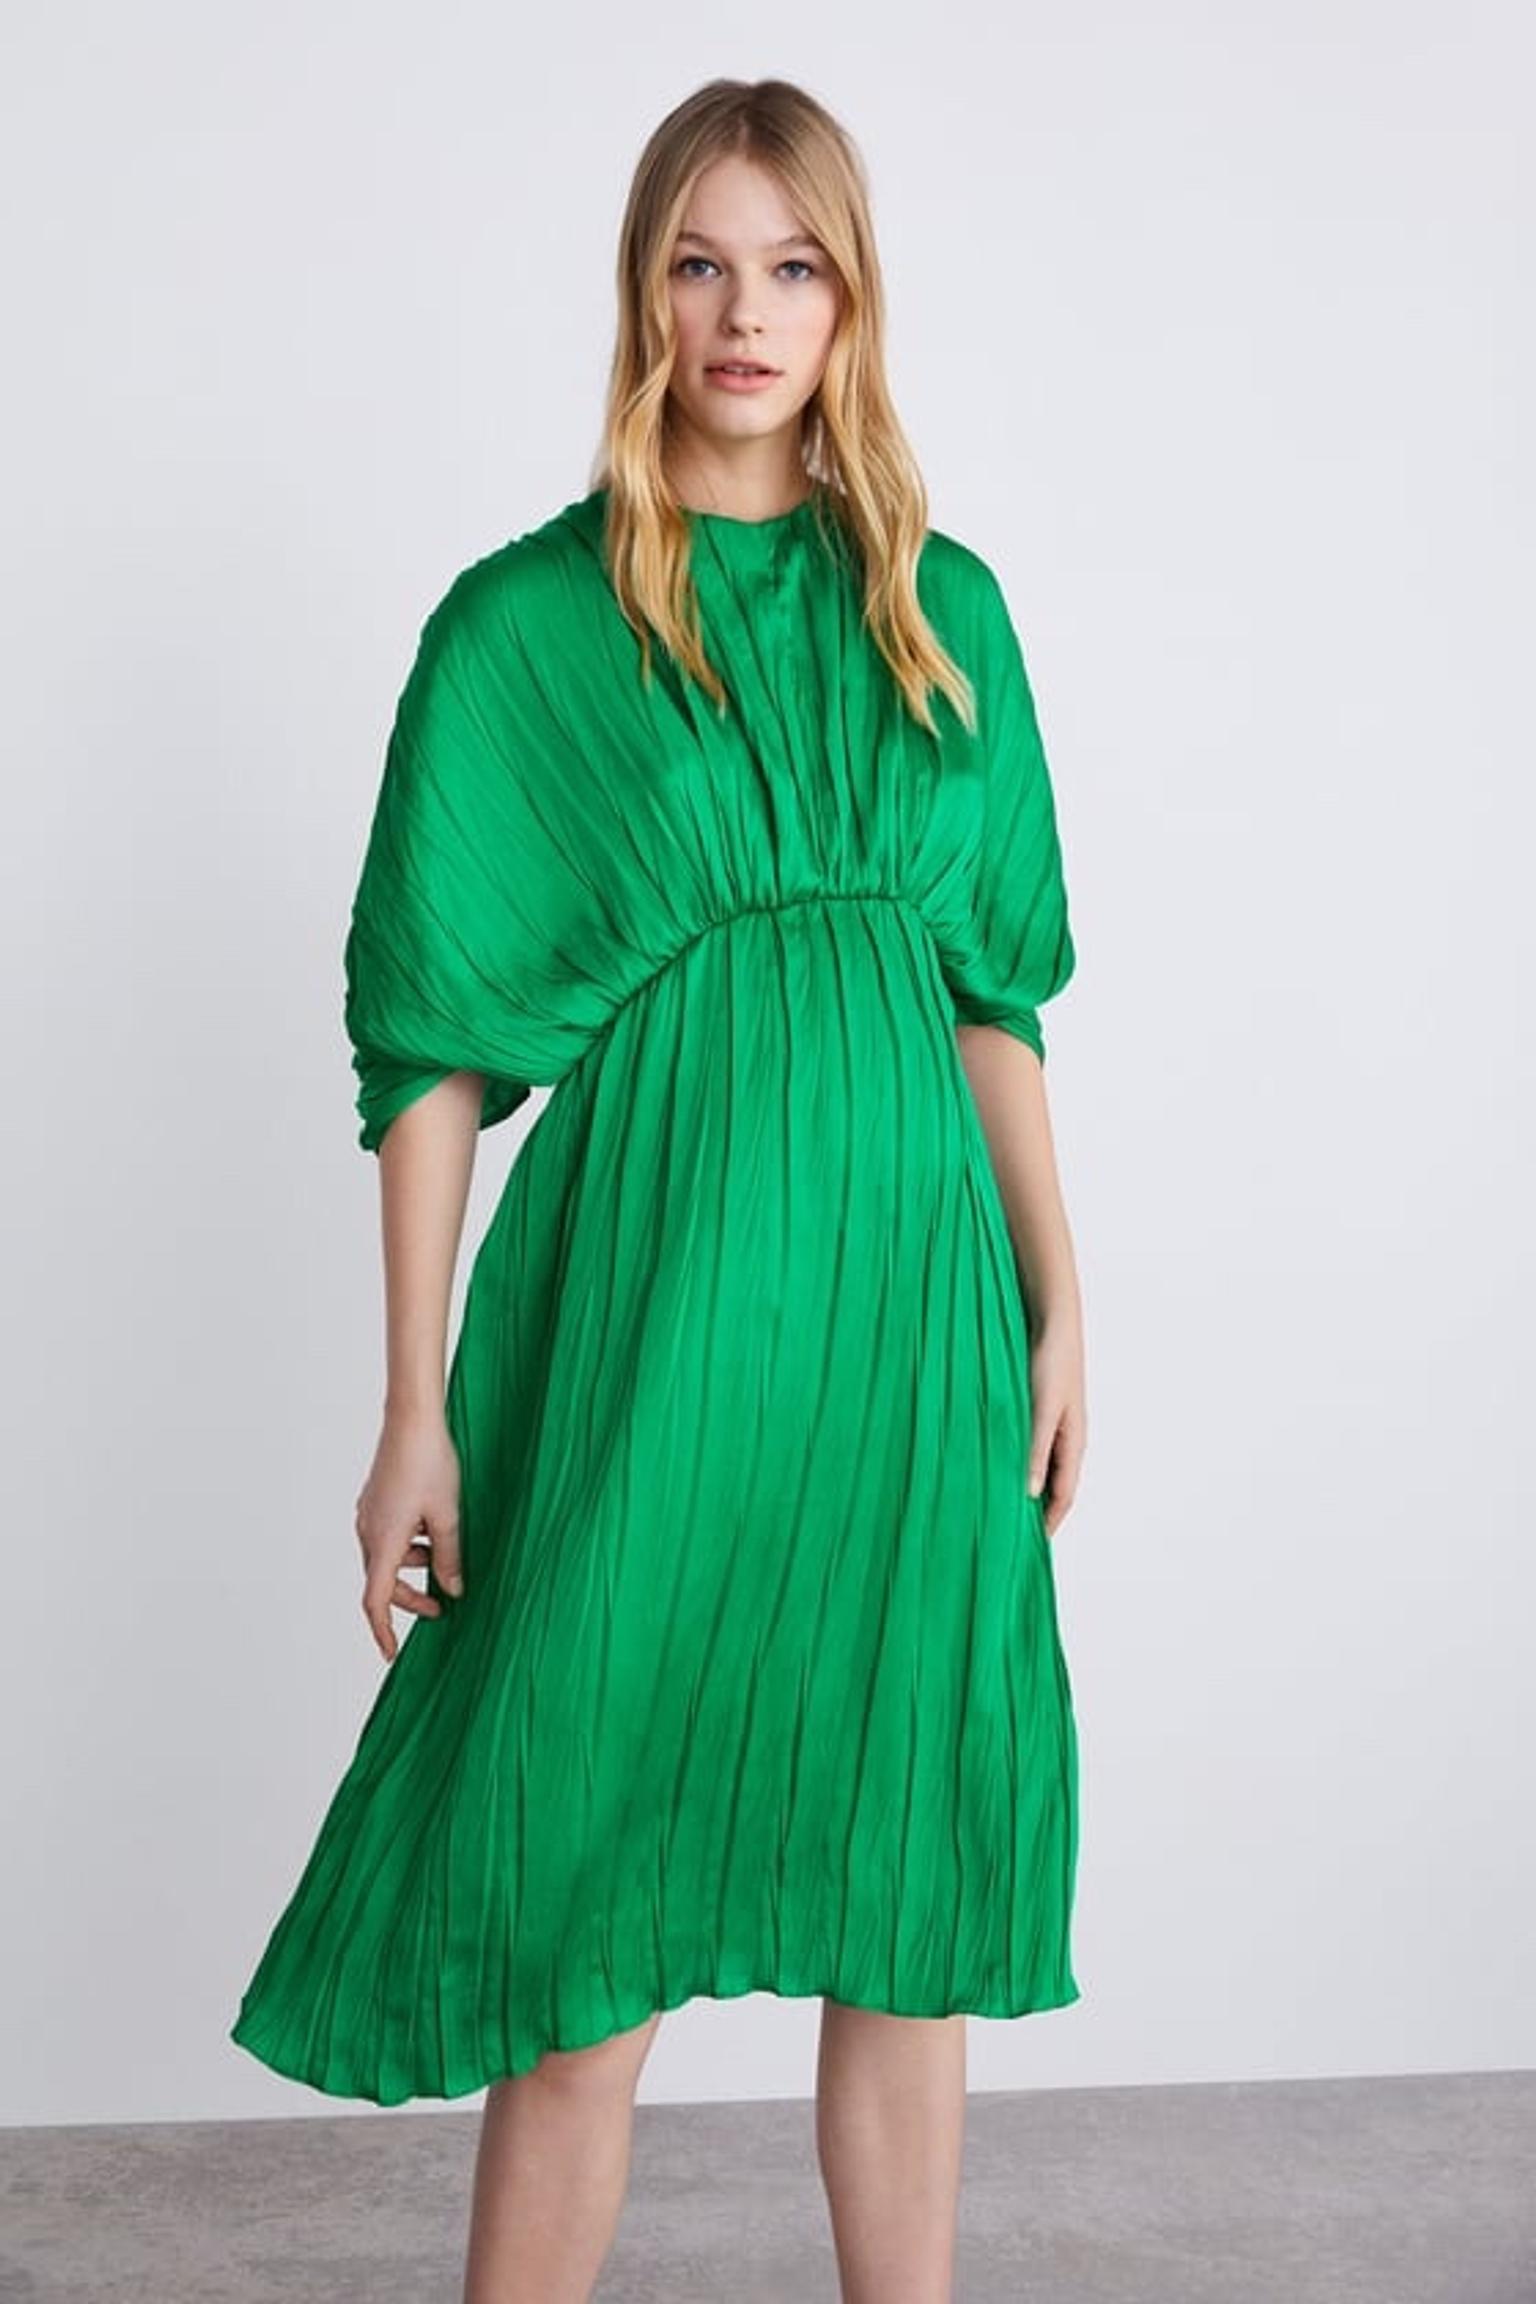 NEW Zara Green Pleated Dress sizes XS,S 